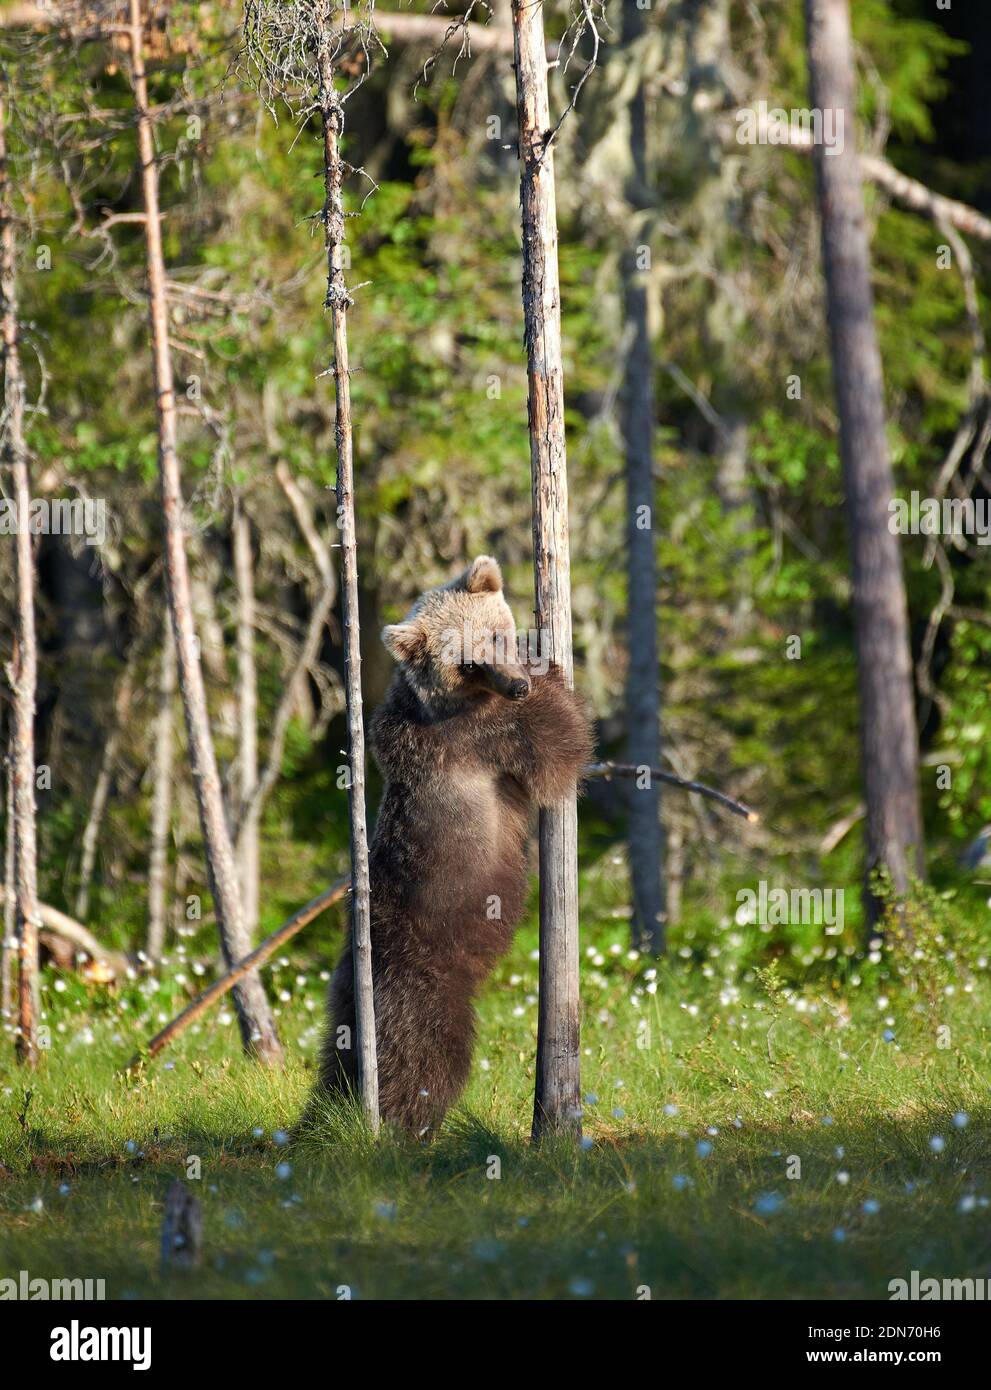 Giovane orso bruno europeo (Ursus arctos) in piedi e abbracciando un albero in palude nella Finlandia nord-orientale alla fine di giugno 2018. Foto Stock